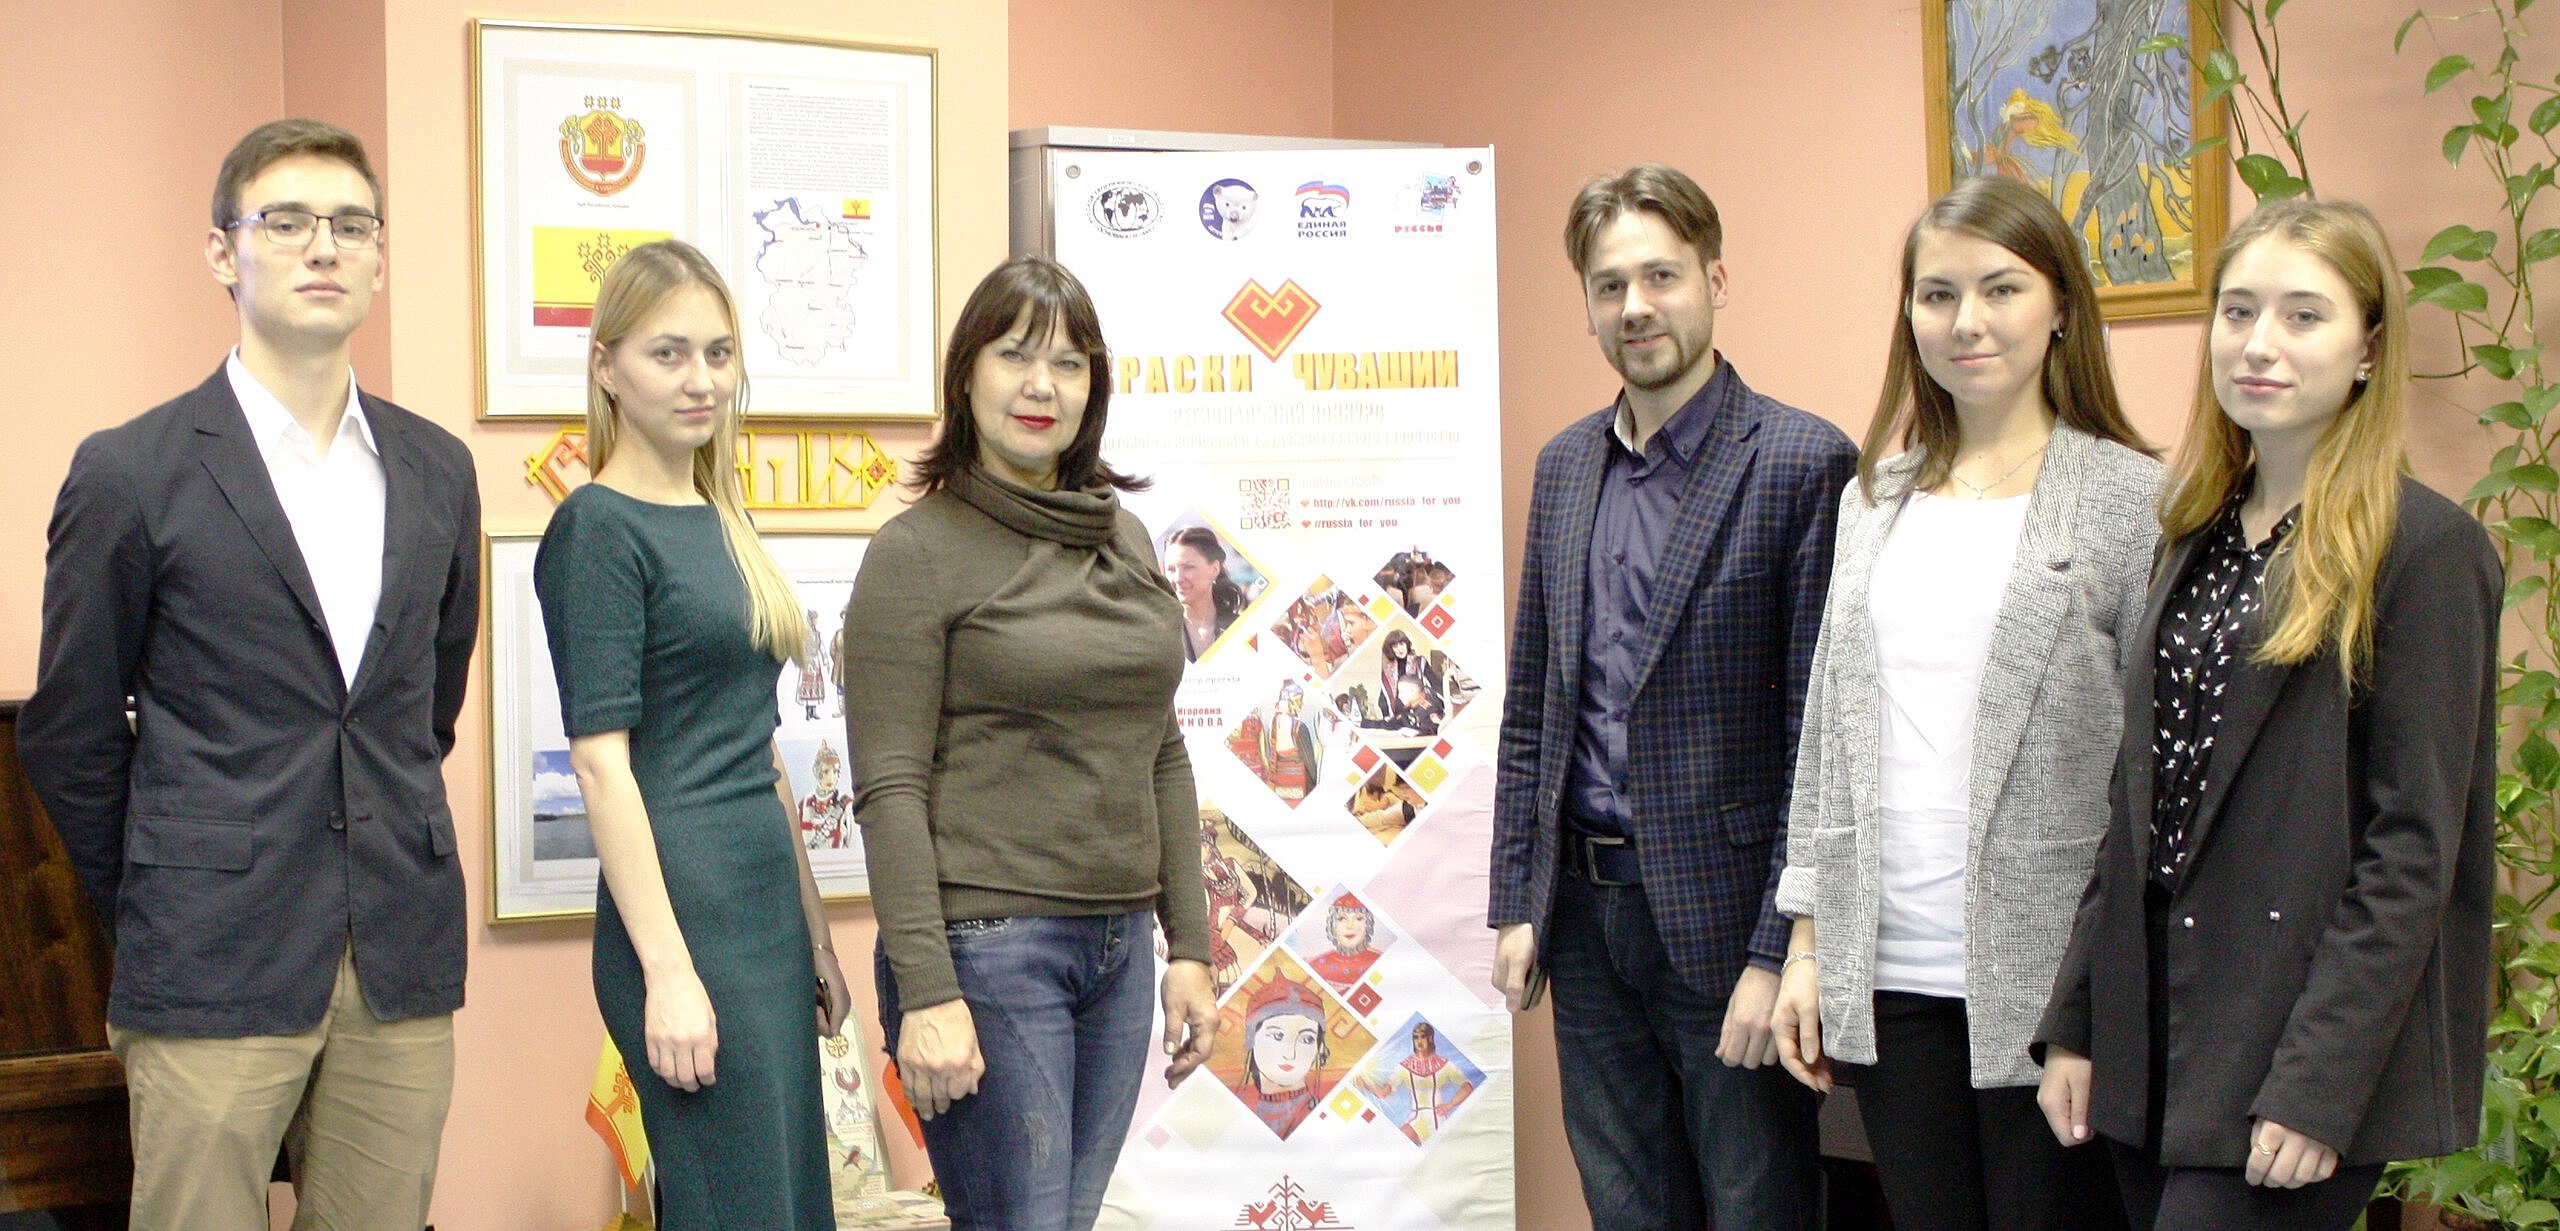 Выставка чувашской культуры открылась в Фили-Давыдково